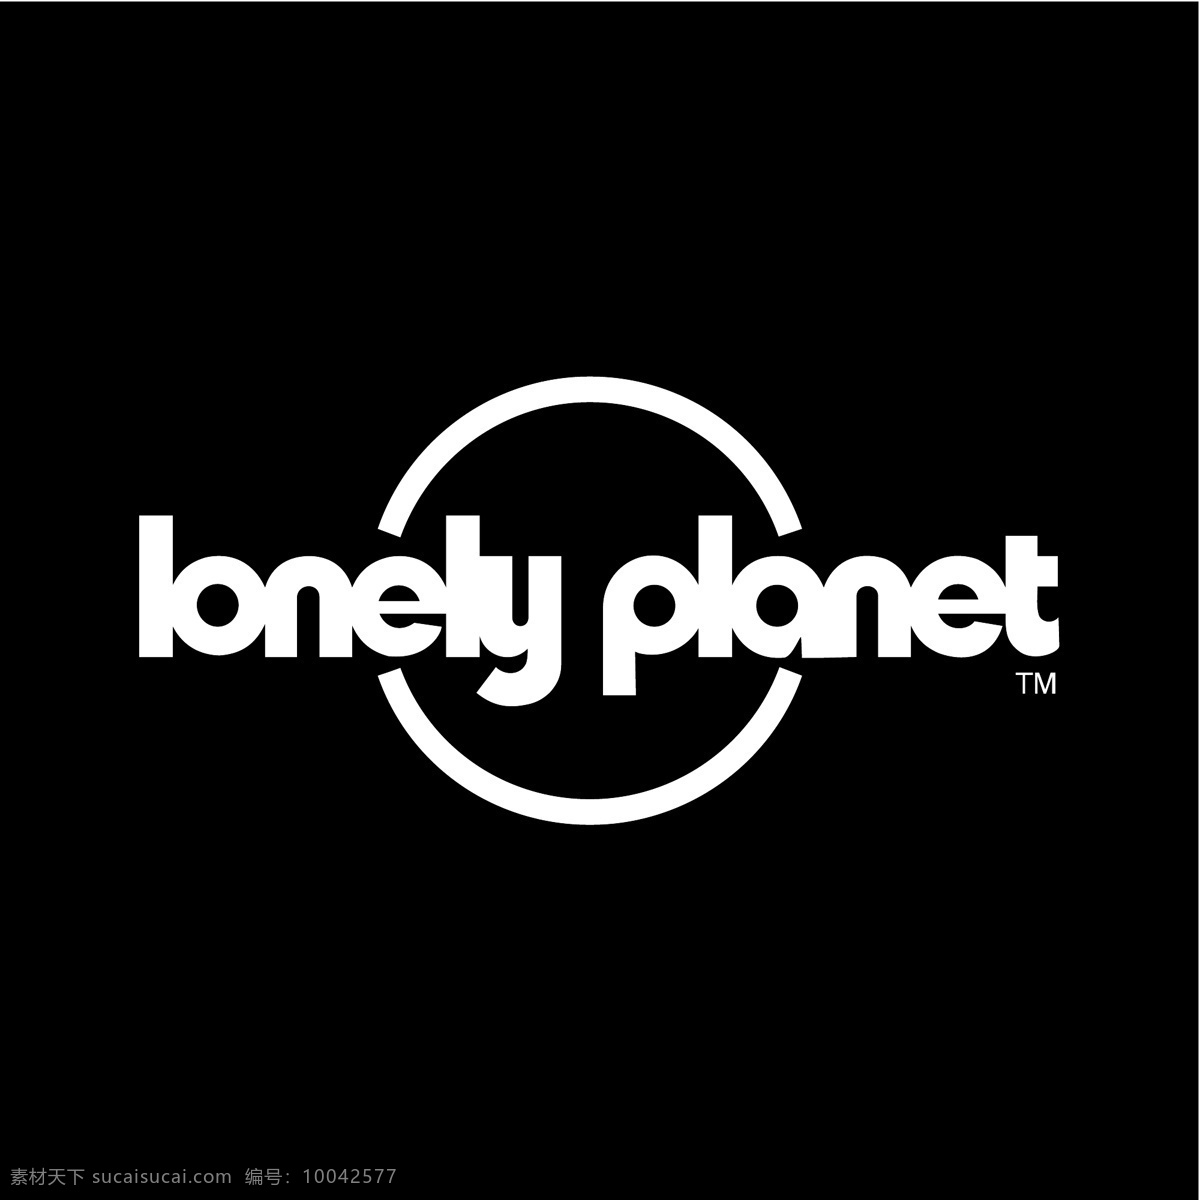 孤独 星球 psd源文件 logo设计